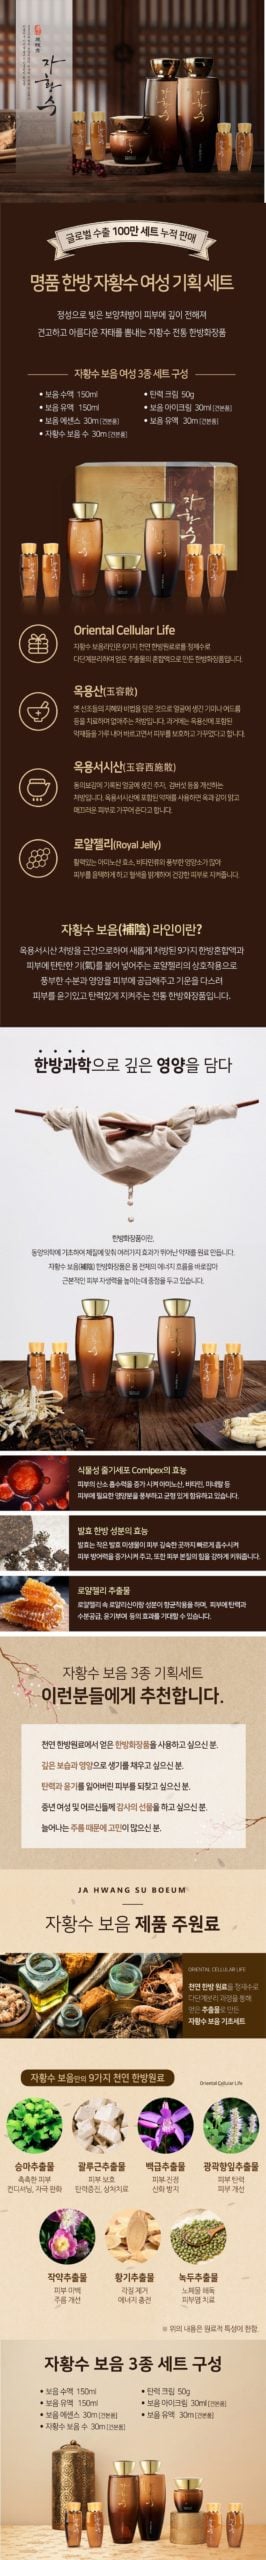 韓國食品-자황수 명품 한방 여성 3종세트